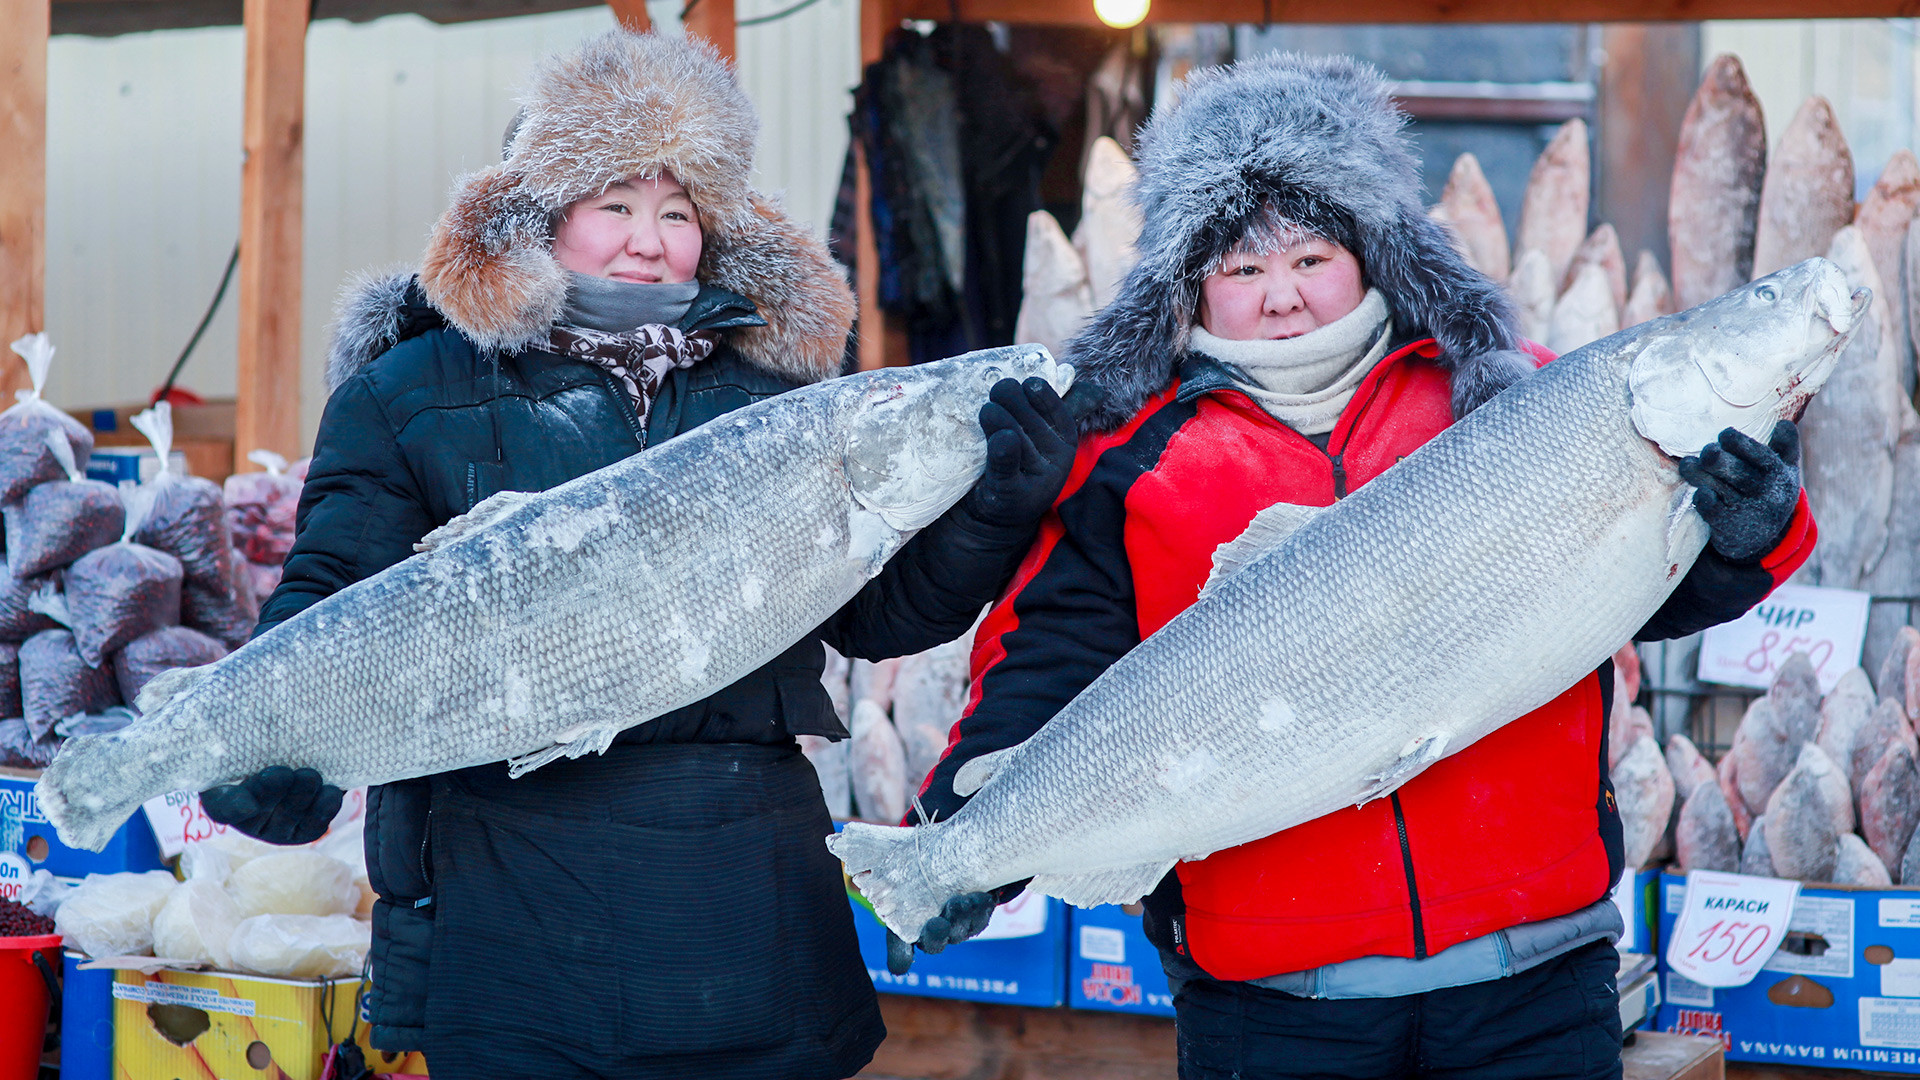 Prodavači ribe na Krestjanskoj tržnici, na -30 stupnjeva Celzija. Prosječna siječanjska temperatura u Jakutsku iznosi oko -40 stupnjeva.